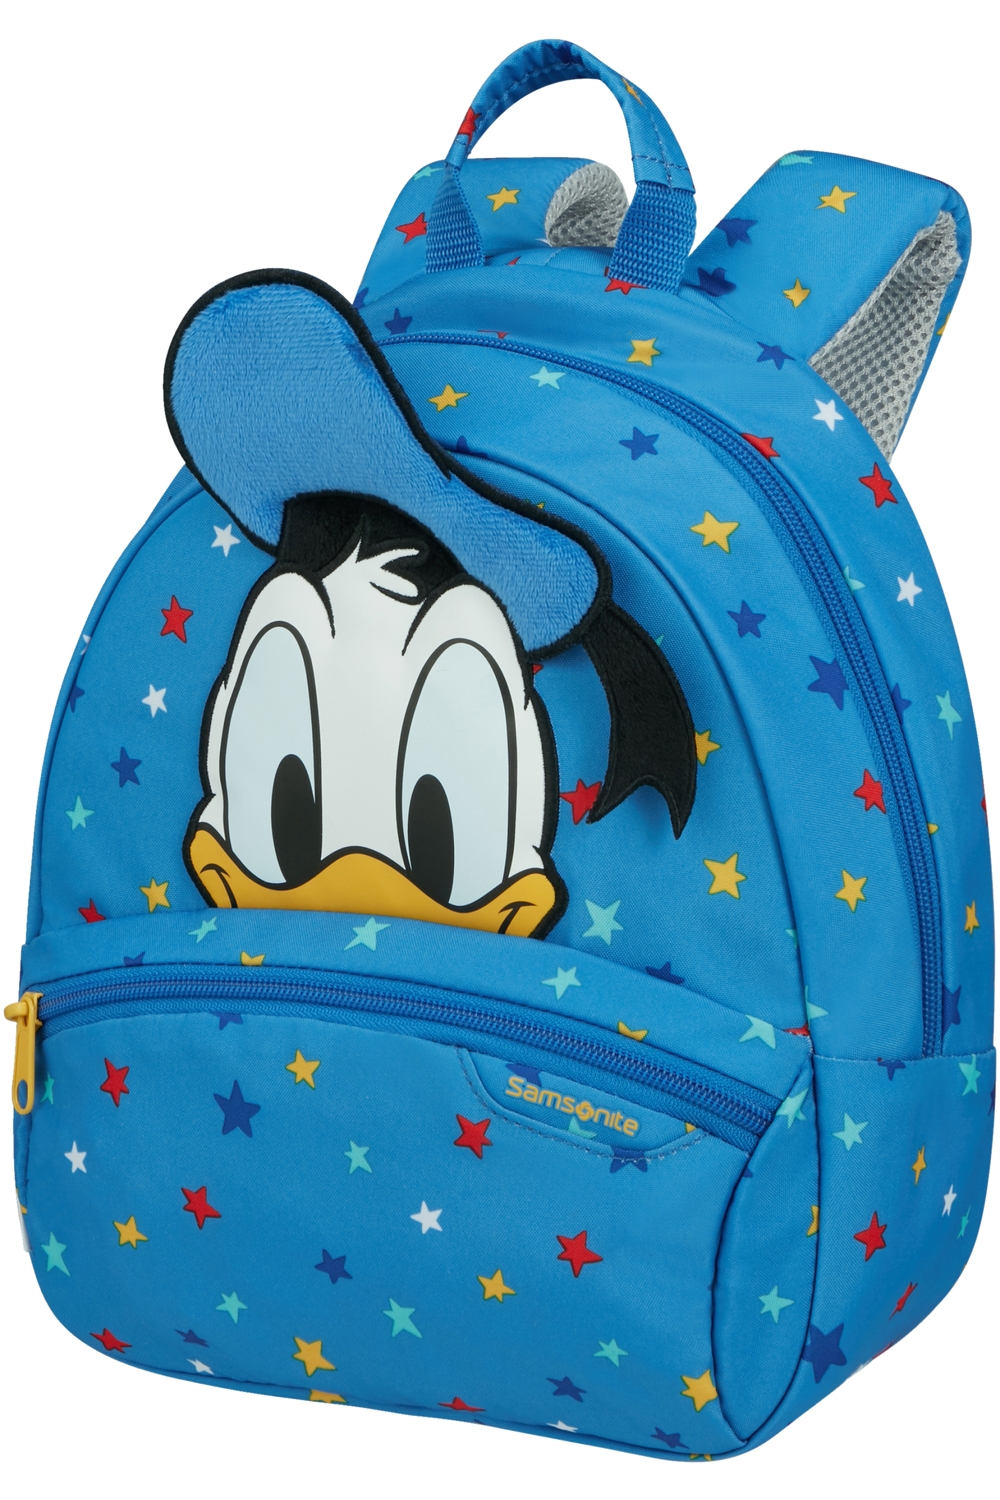 Levně SAMSONITE Dětský batoh Disney Ultimate 2.0 Donald Stars, 24 x 13 x 28 (140111/9549)